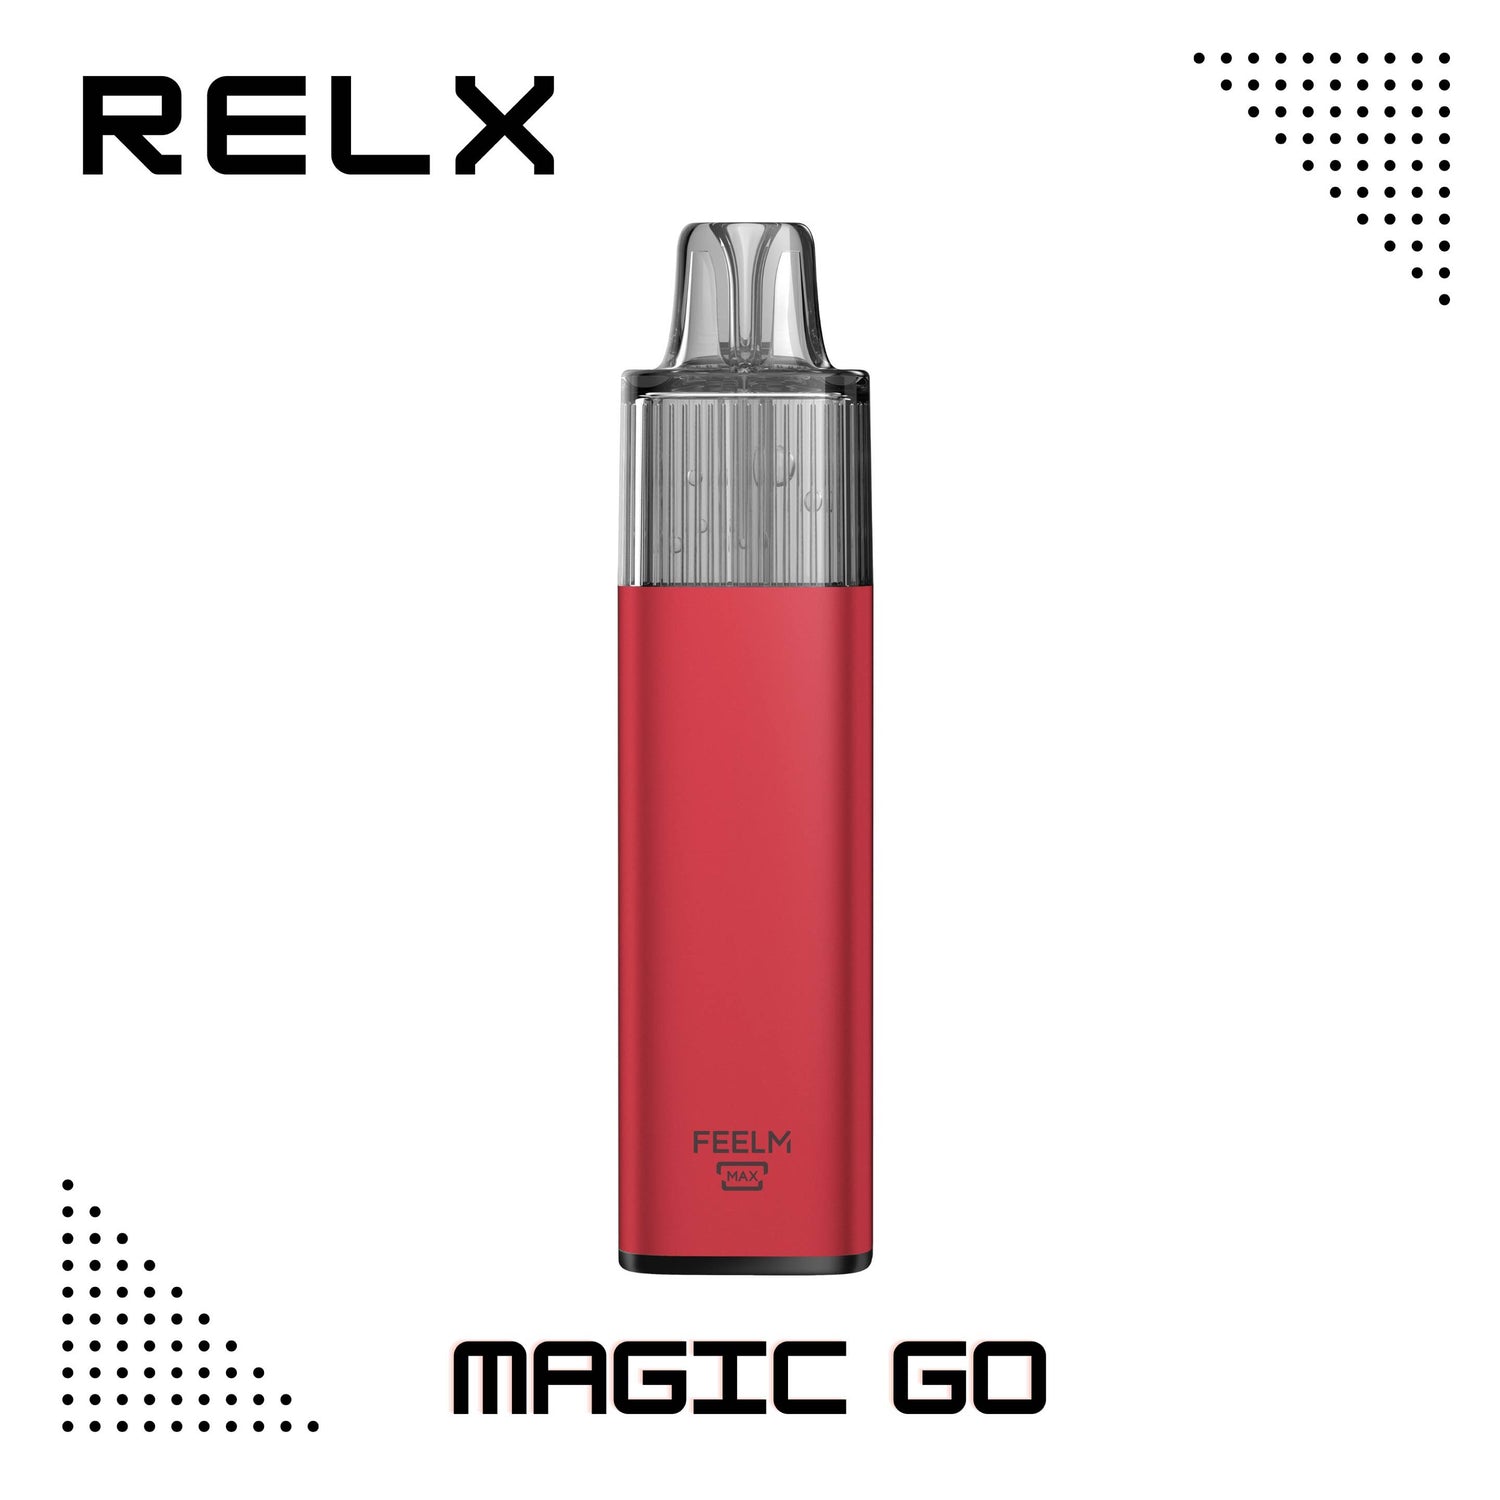 RELX Magic Go